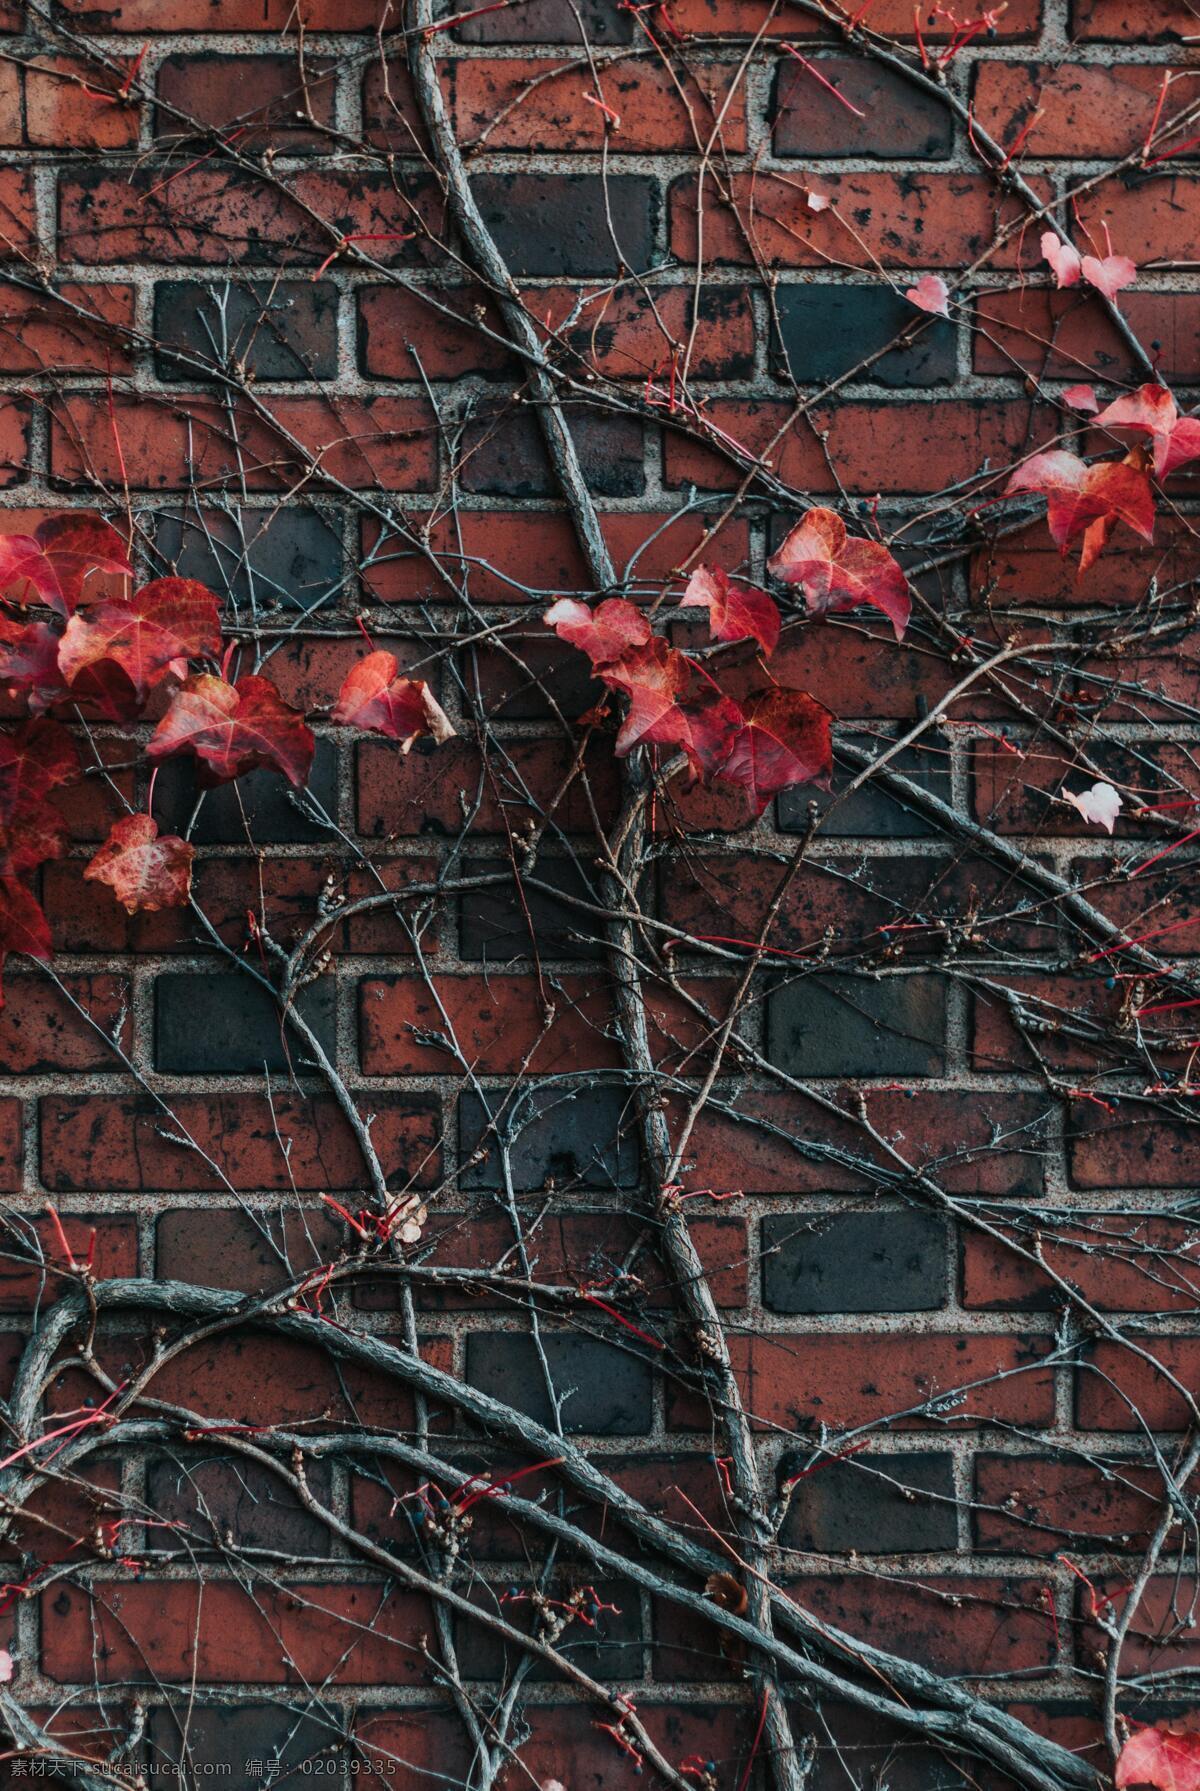 墙上植物 墙 植物 生命力 生机 花 美丽 孤独 红色 复古 老 背景 质感 环境 场景 电影场景 纹理 表面纹理 墙壁 树枝 树叶 树 生活百科 生活素材